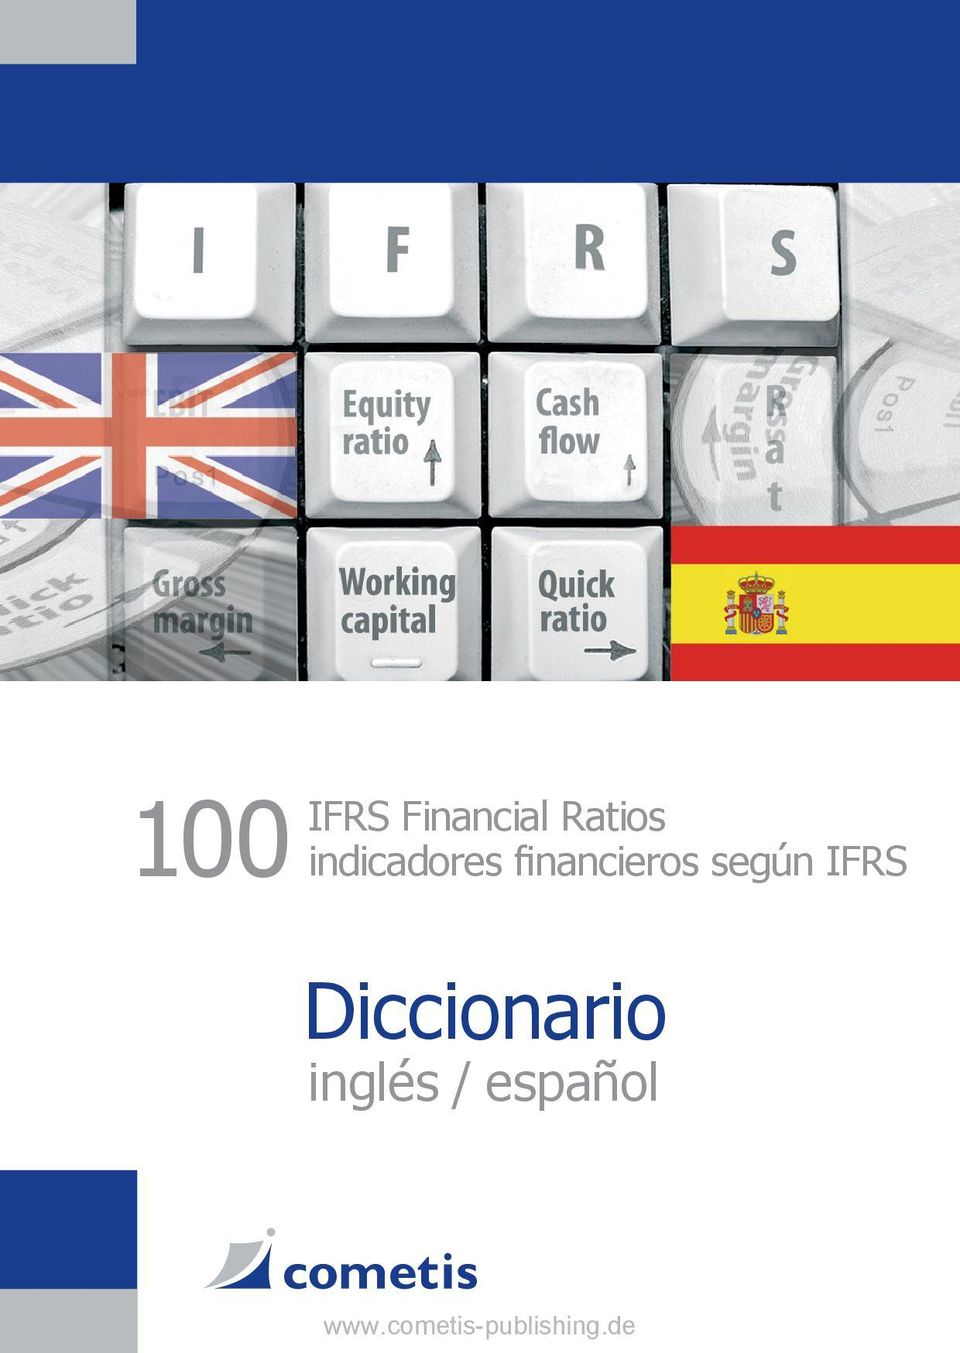 financieros según IFRS